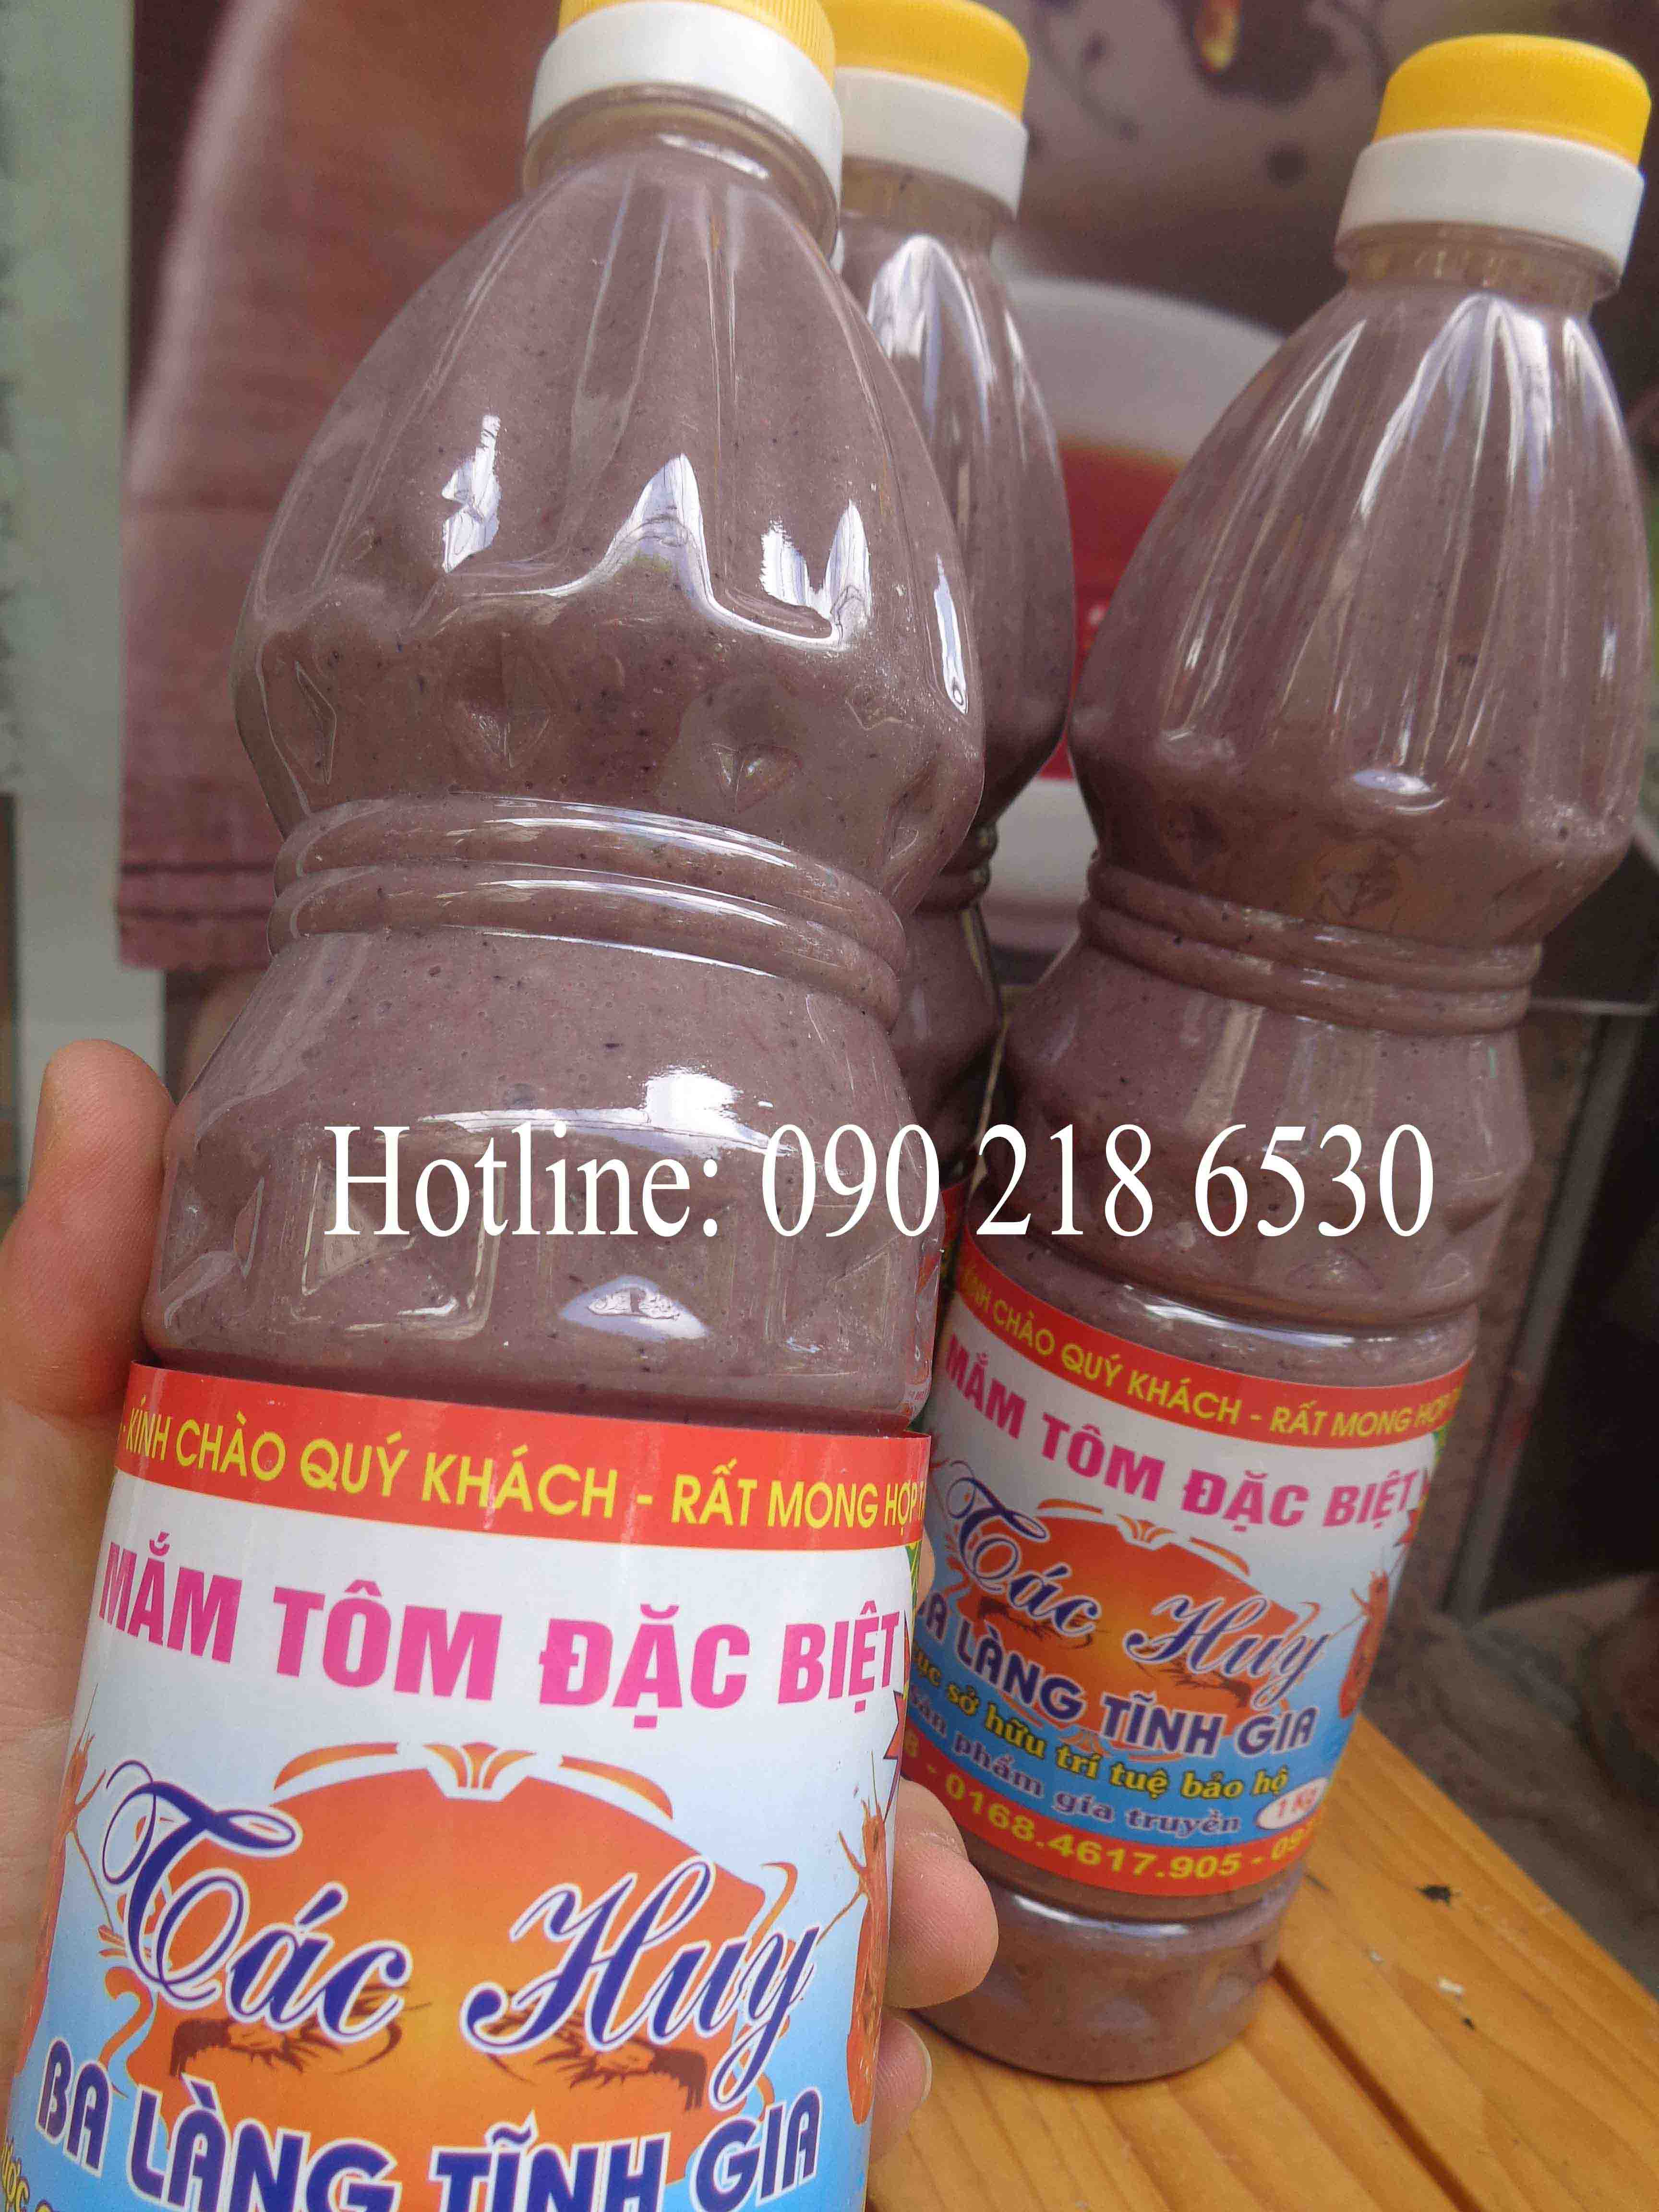 Mắm tôm đặc sản Ba làng - Thanh Hóa (cơ sở Tác Huy) (chai 1l)